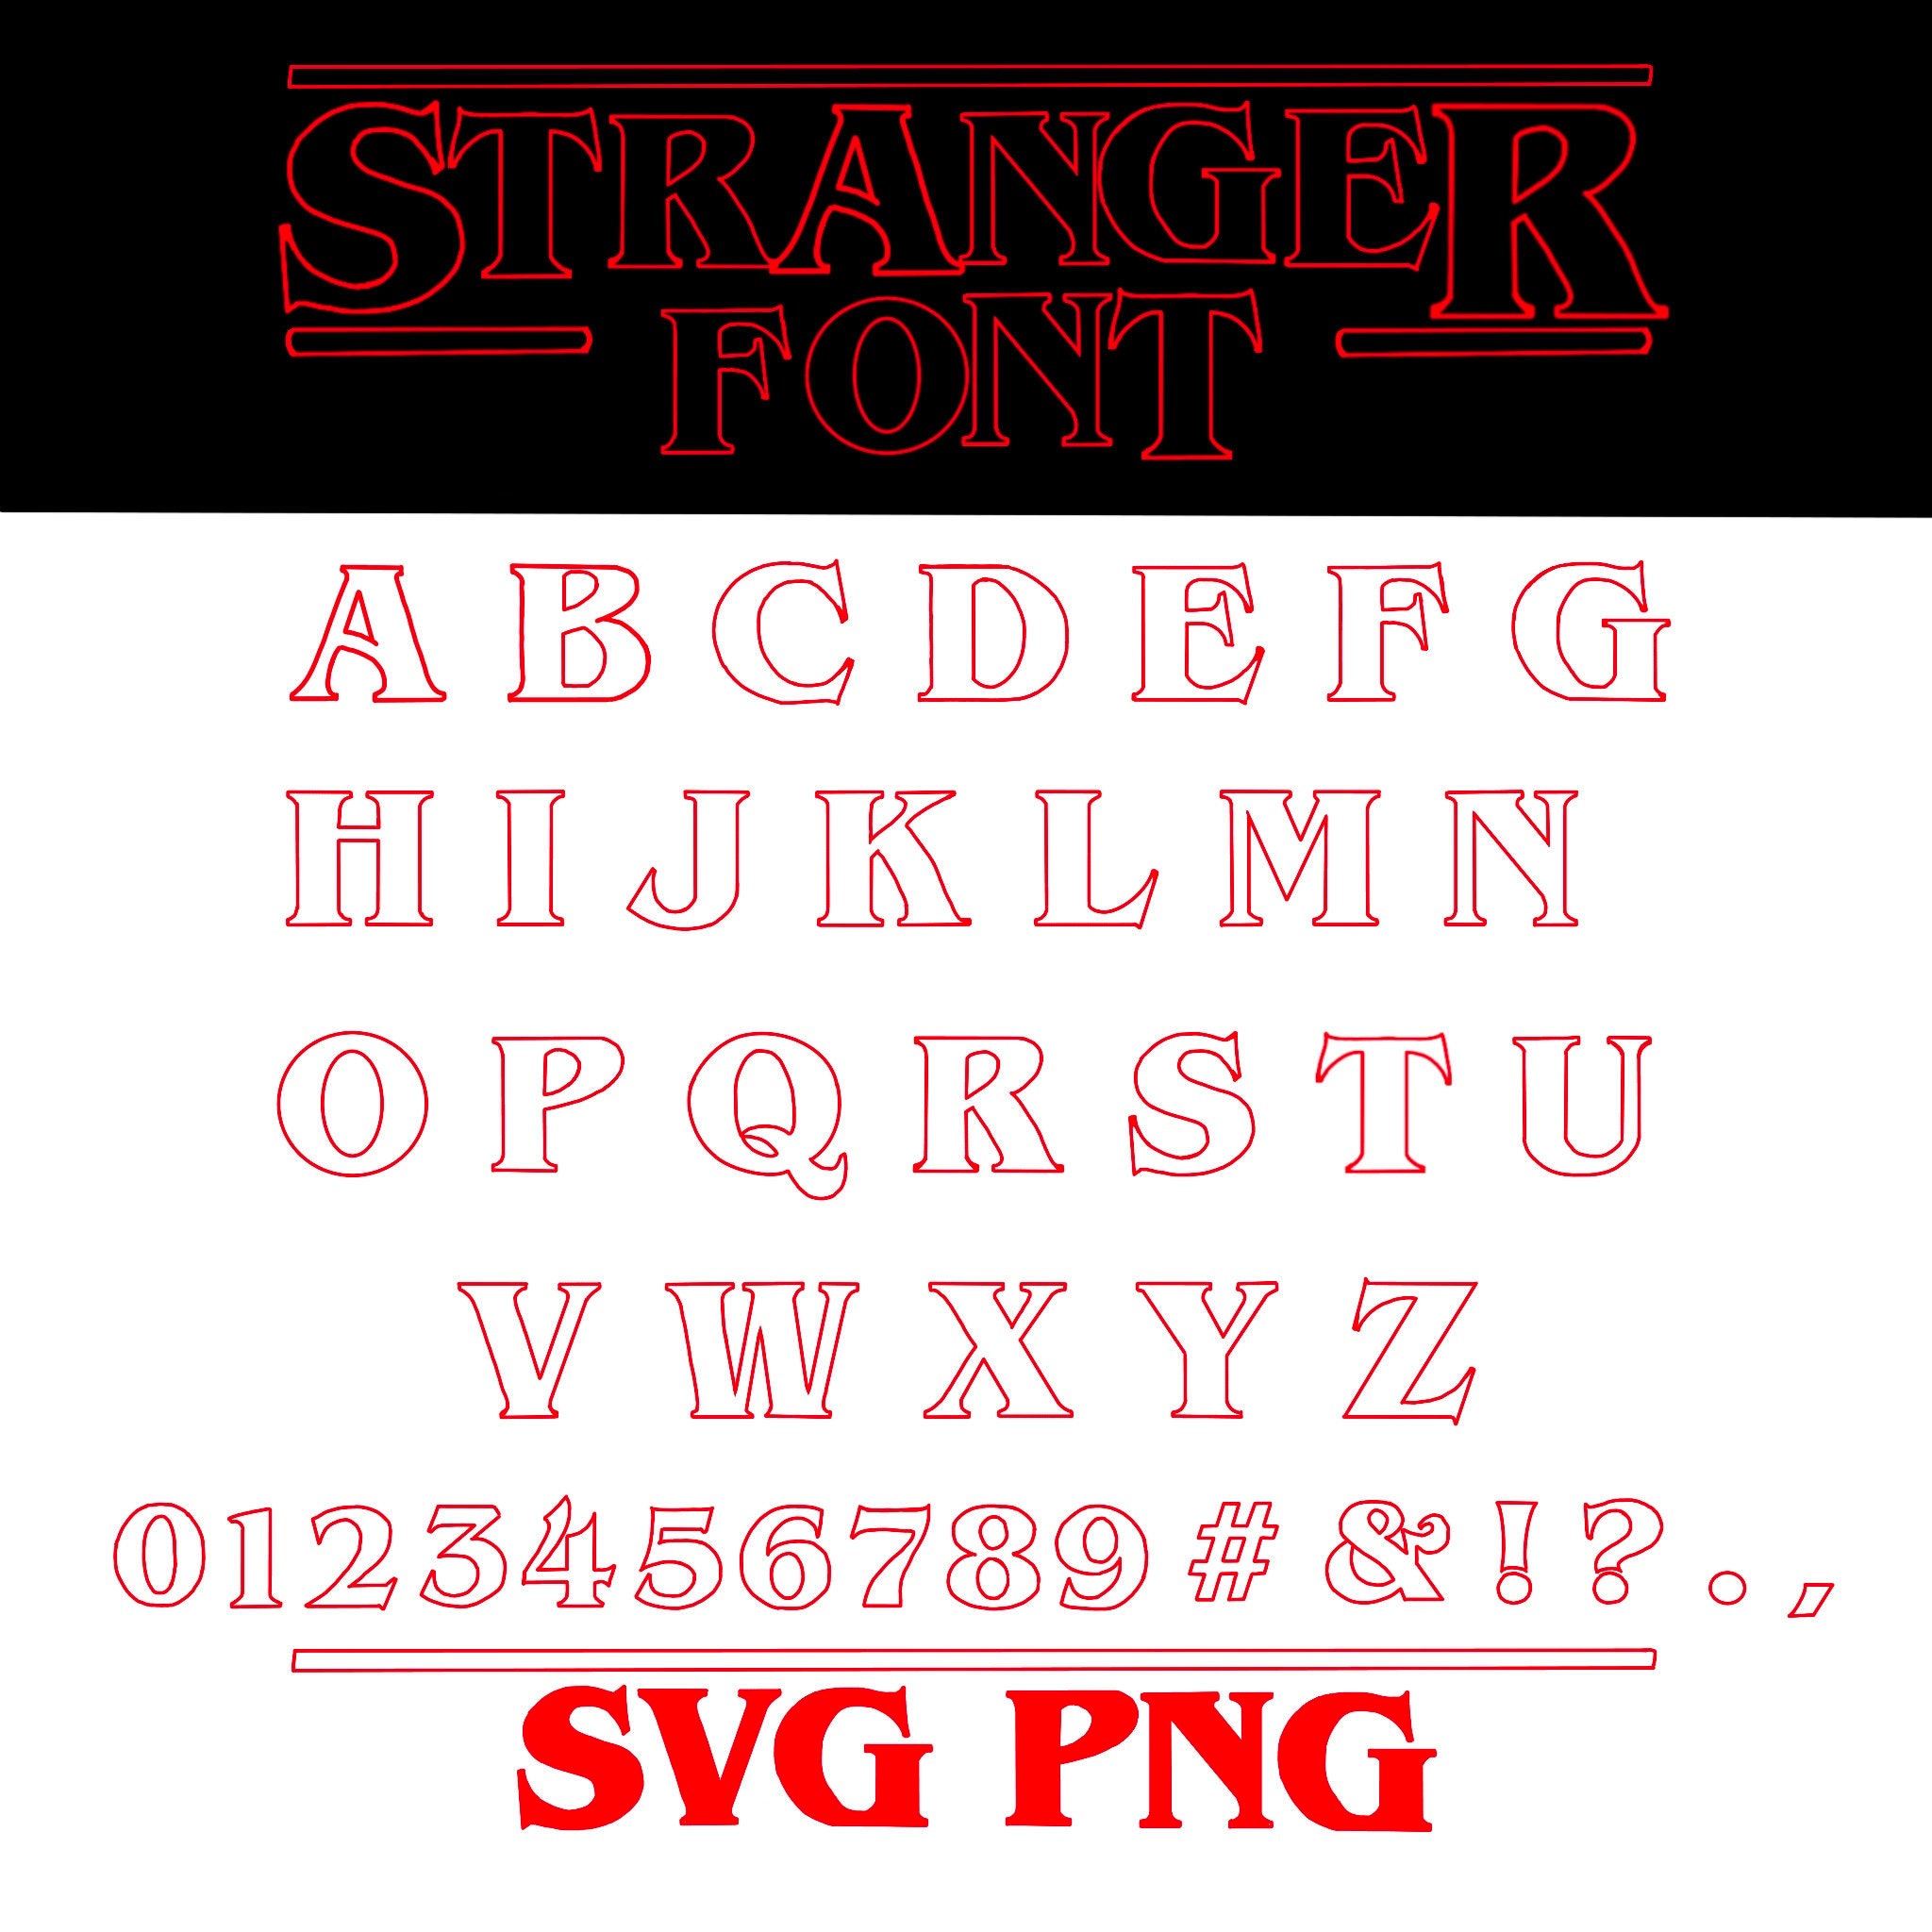 stranger things font illustrator download